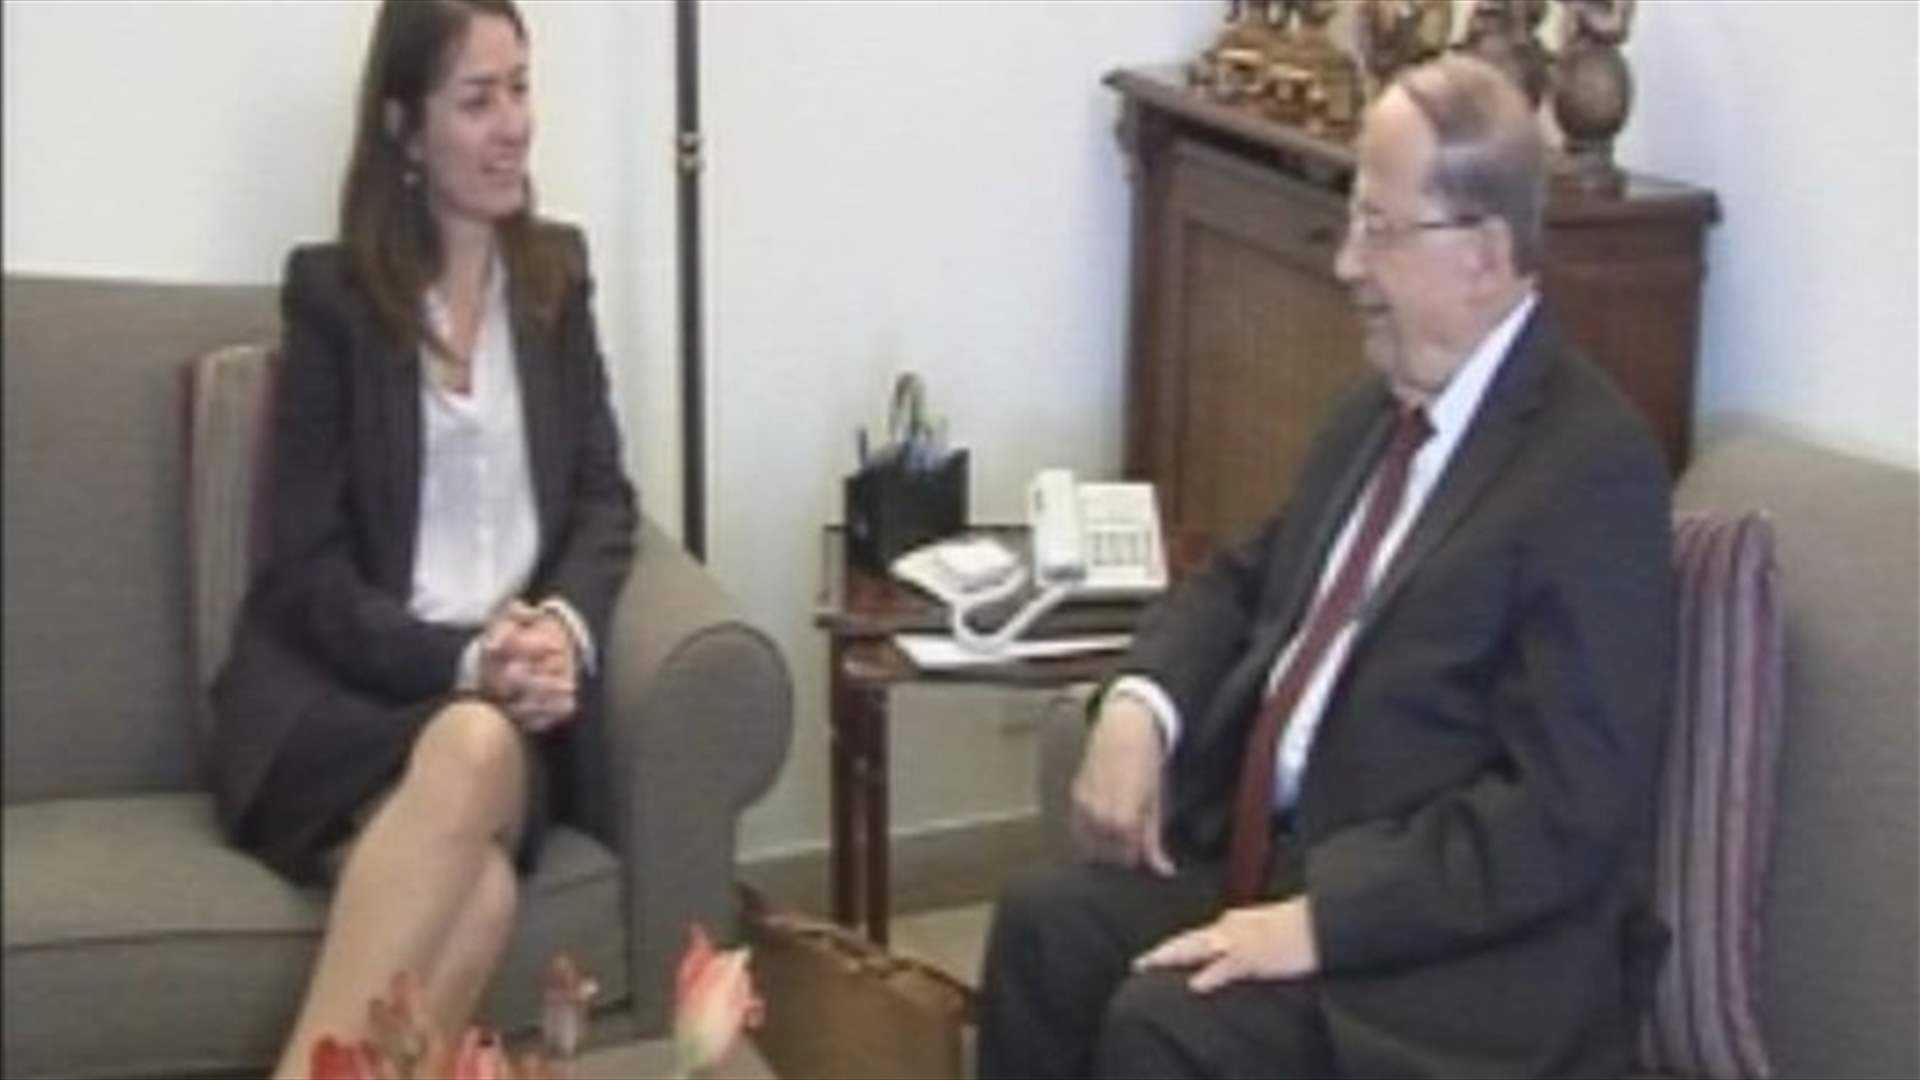 MP Aoun meets with US senator, EU ambassador